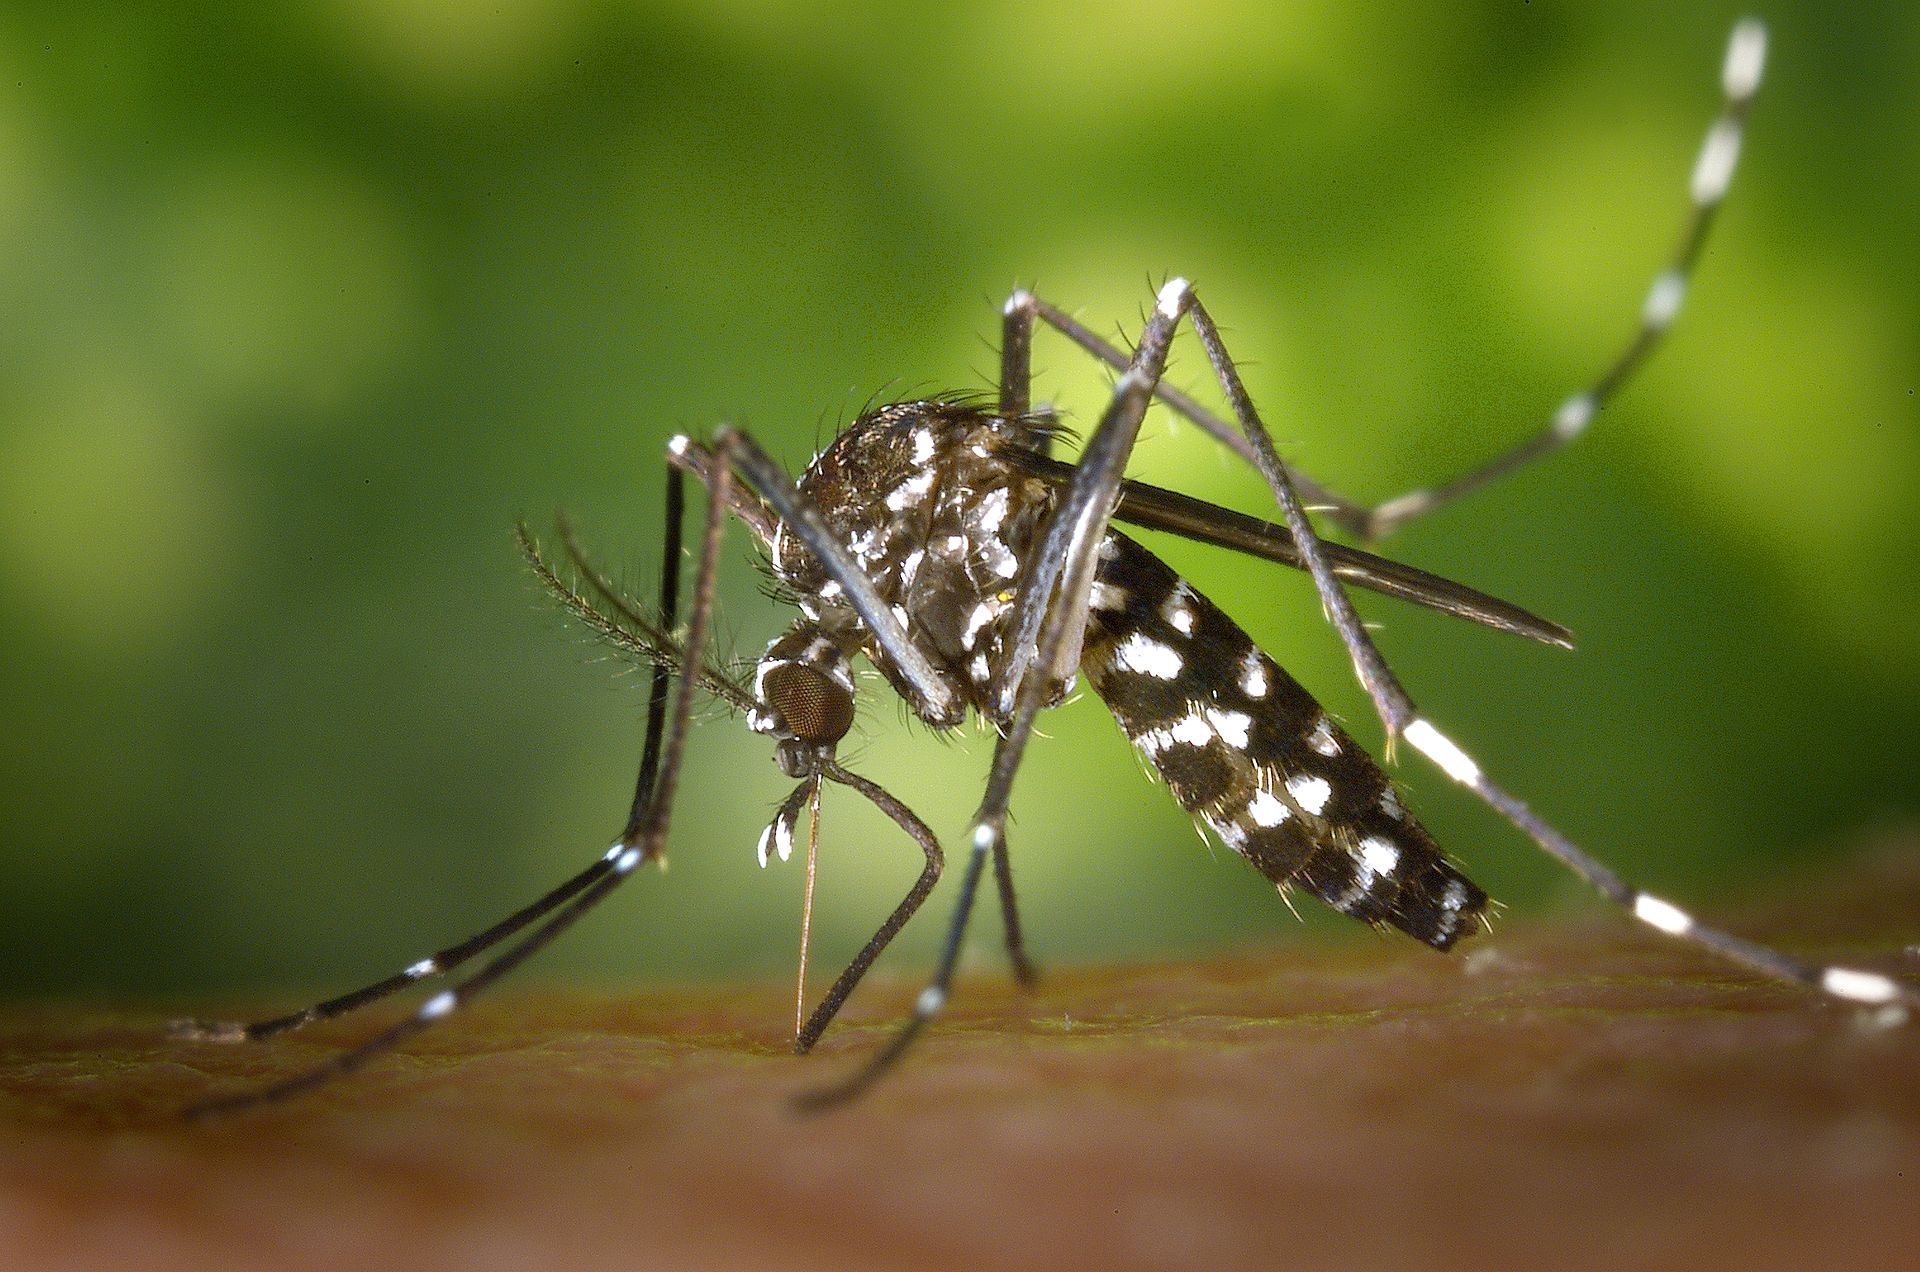 Le moustique tigre Aedes albopictus est désormais présent sur le pourtour méditerranéen et le sud-ouest de la France. © CDC (Centers for Disease Control and Prevention), DP